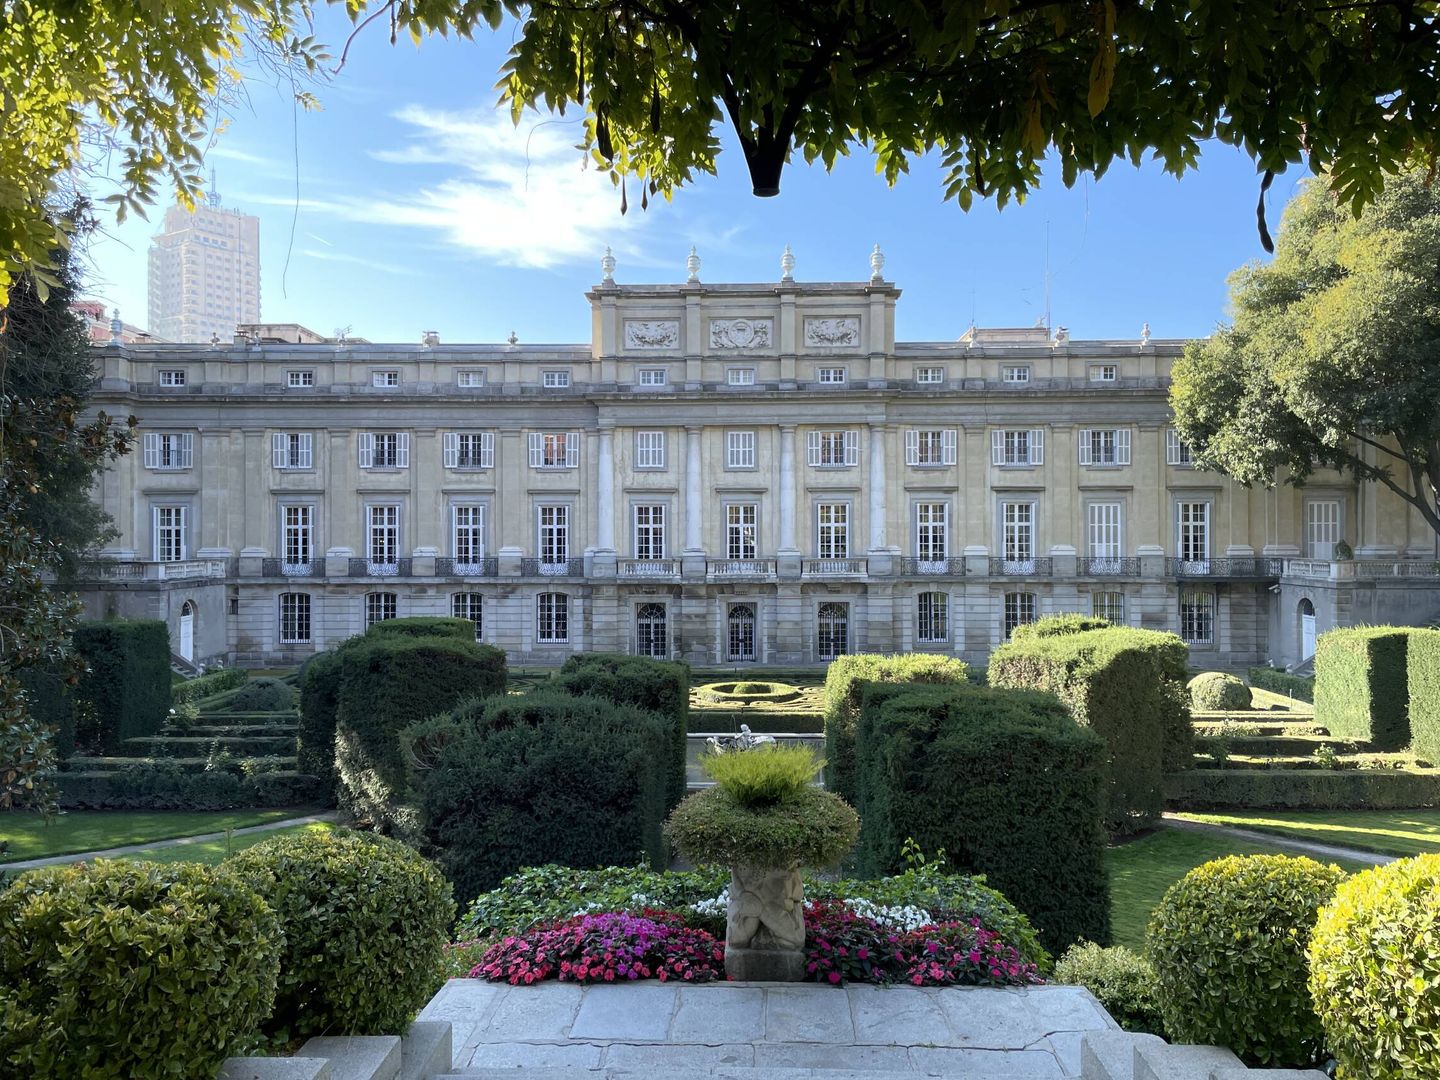 La fachada del Palacio, con los jardines en primer término. (Cortesía)